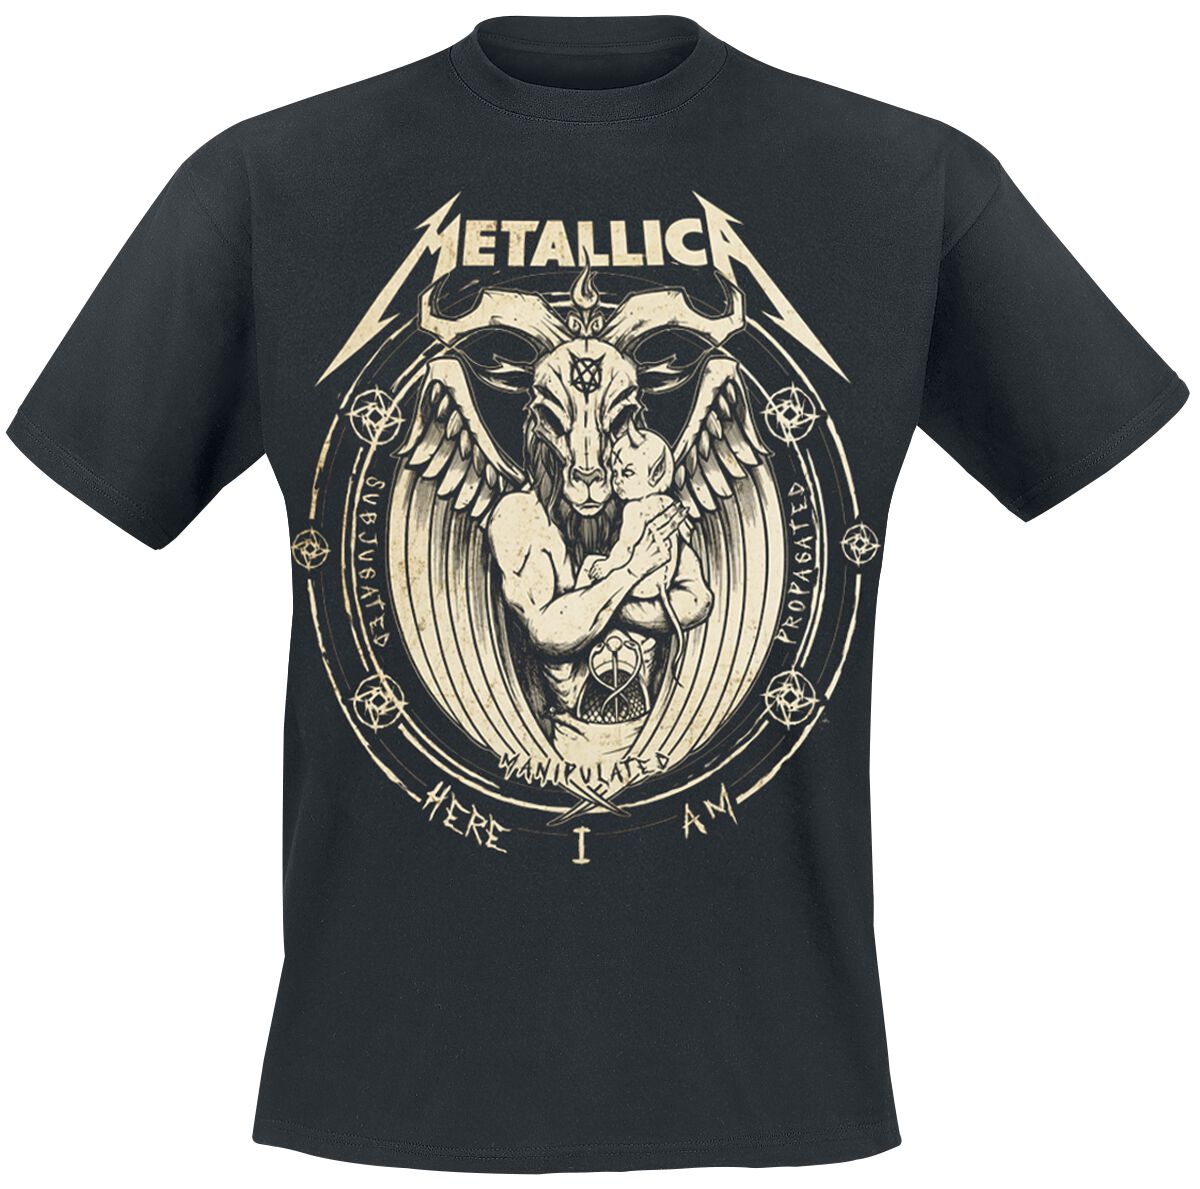 Metallica T-Shirt - Darkness Son - S bis 5XL - für Männer - Größe 4XL - schwarz  - Lizenziertes Merchandise!